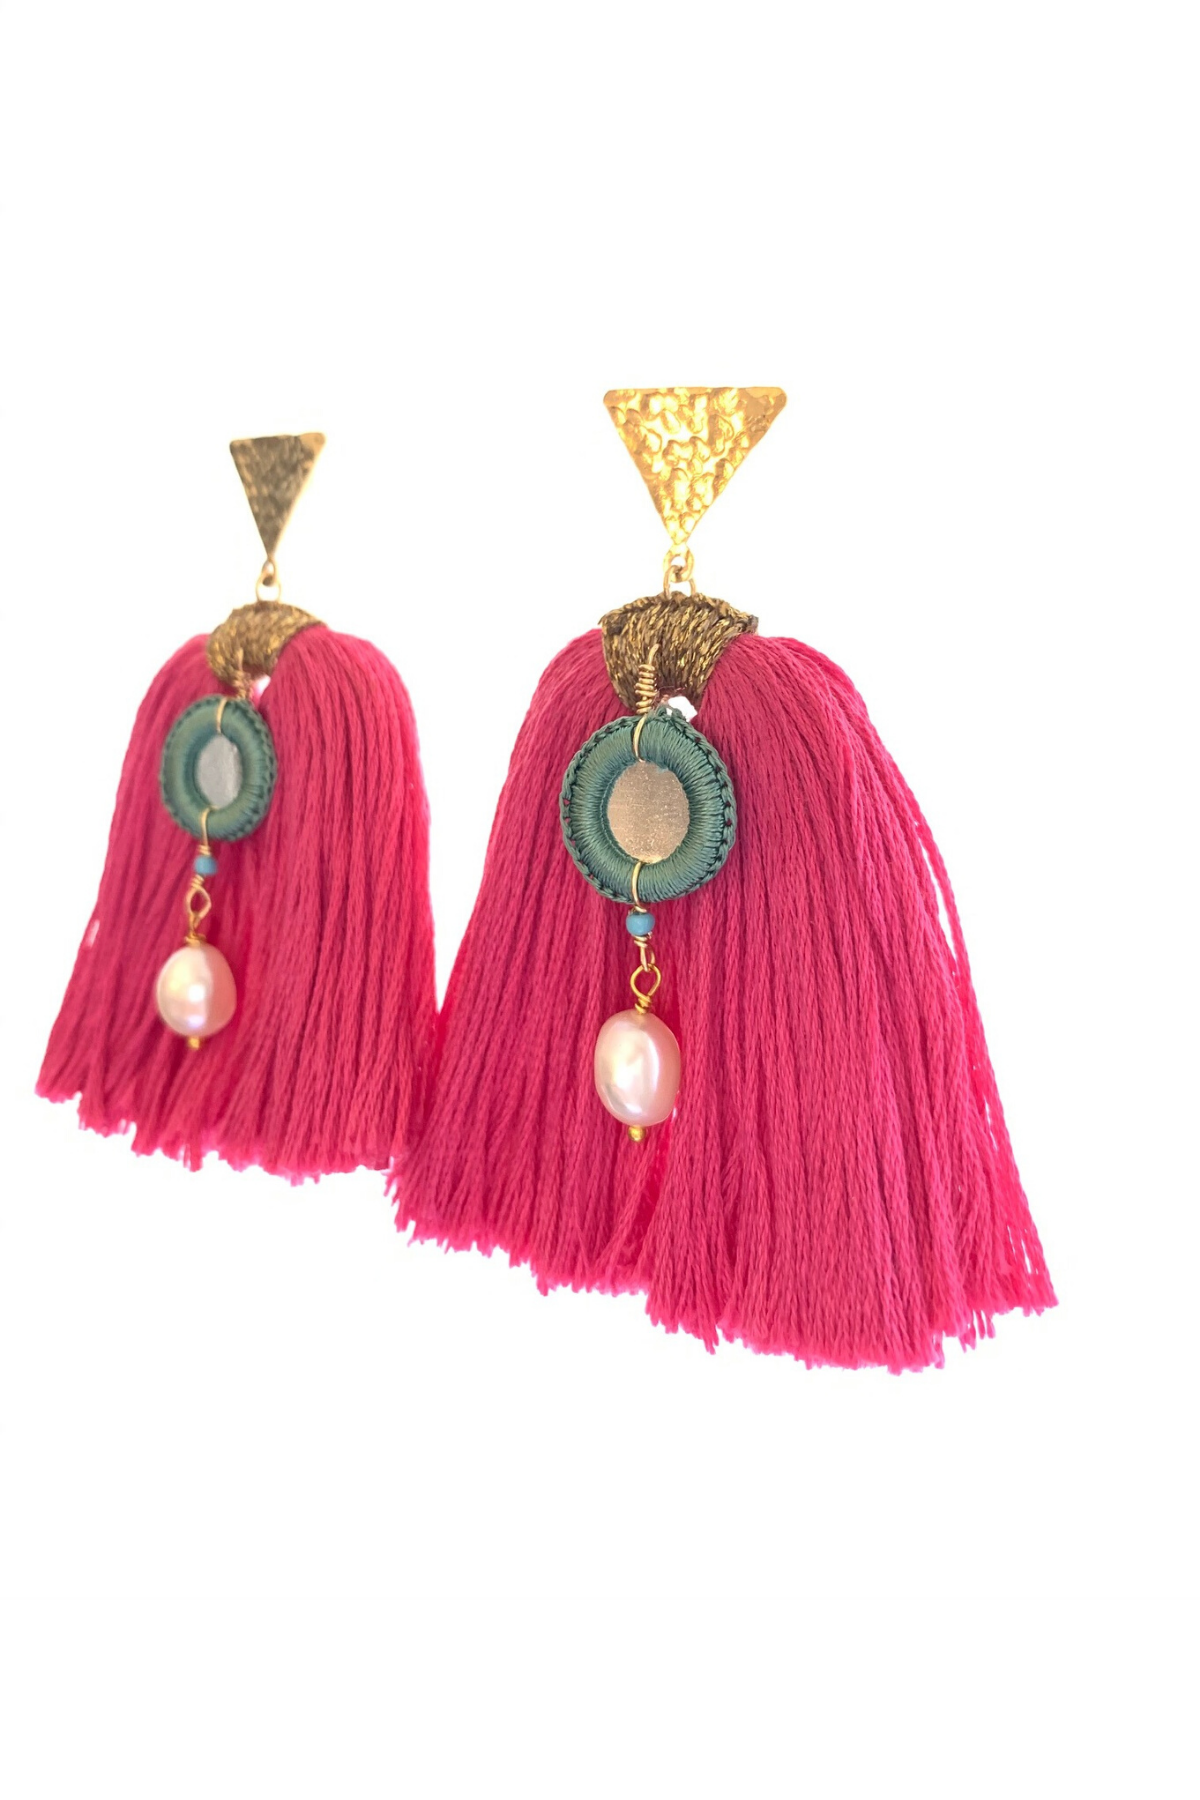 Pink Tassle Earrings